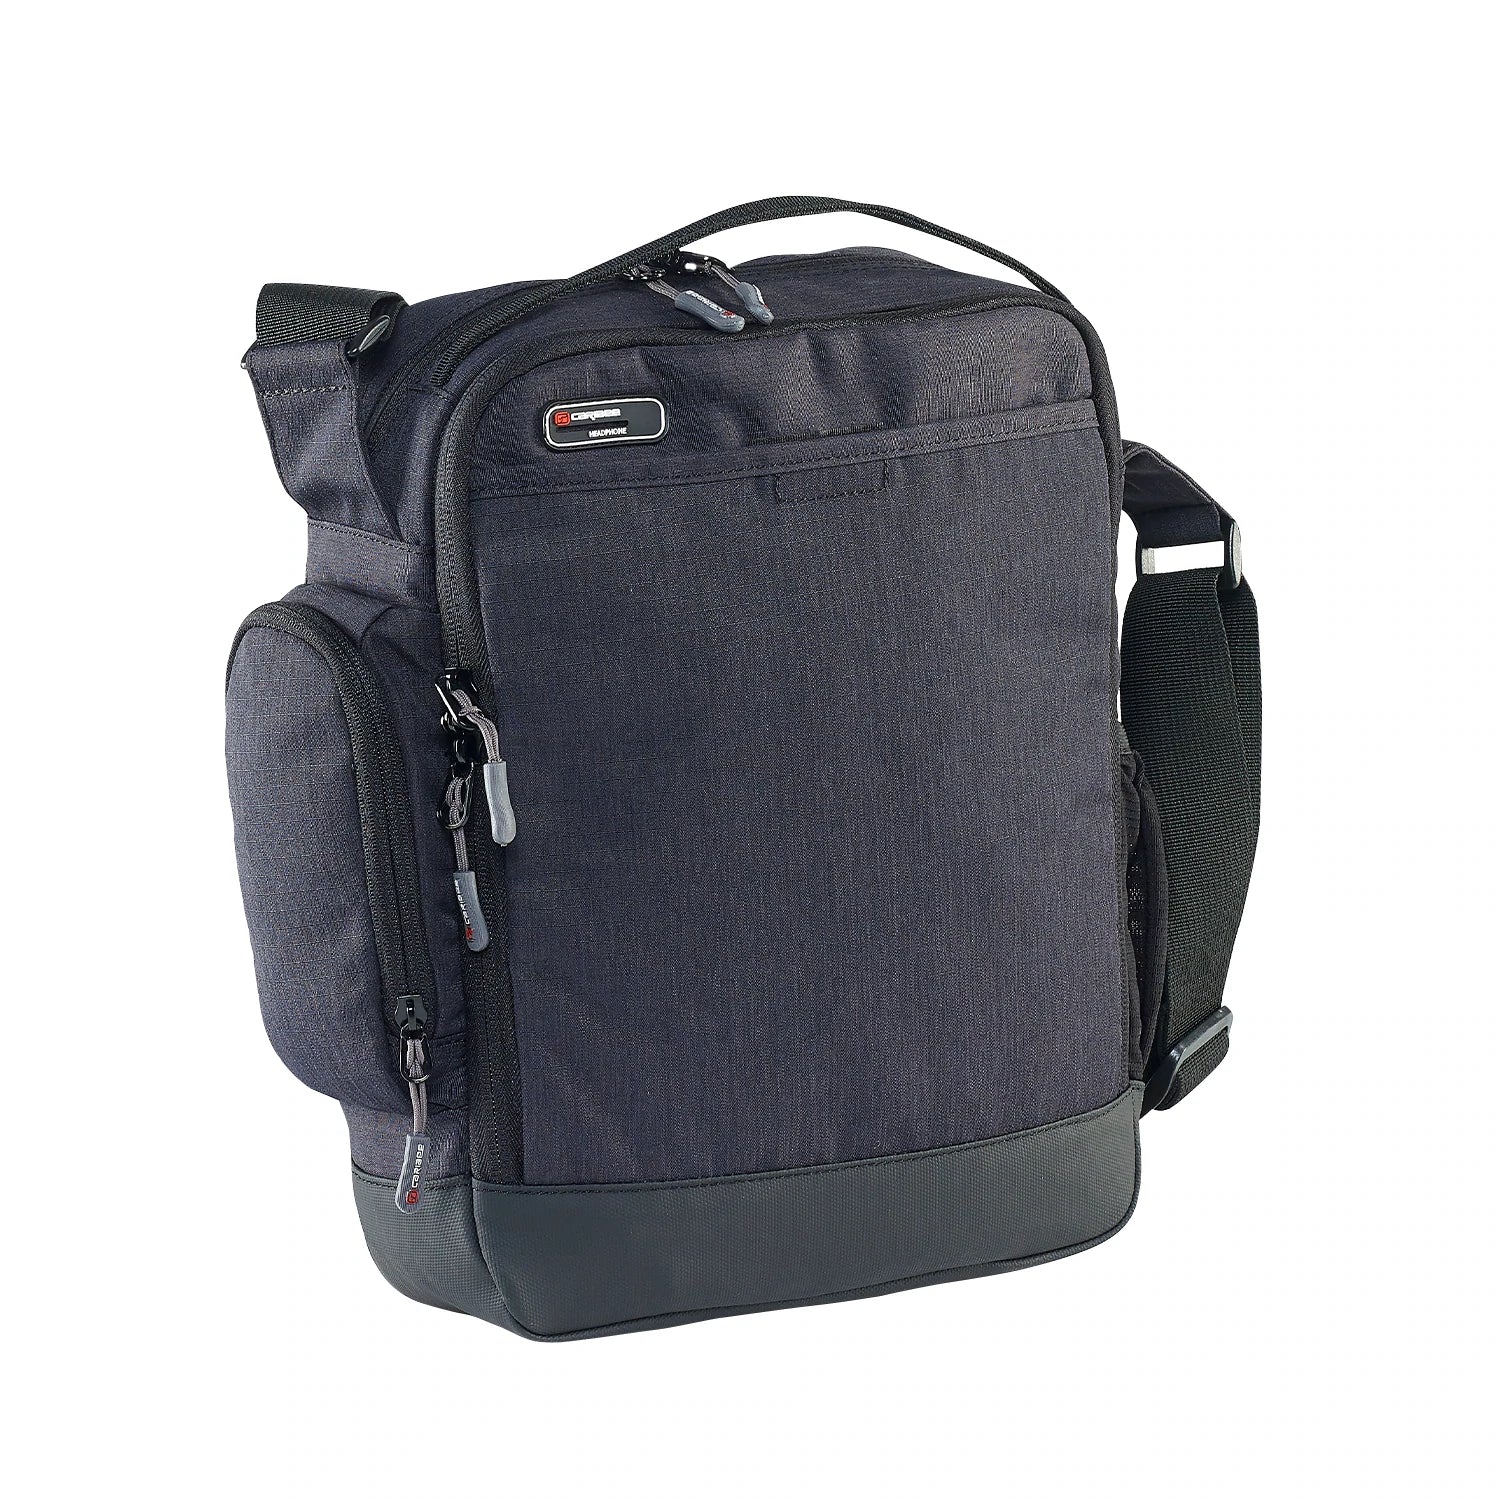 Caribee - Departure Bag 2.0 Travel Shoulder Bag - 0